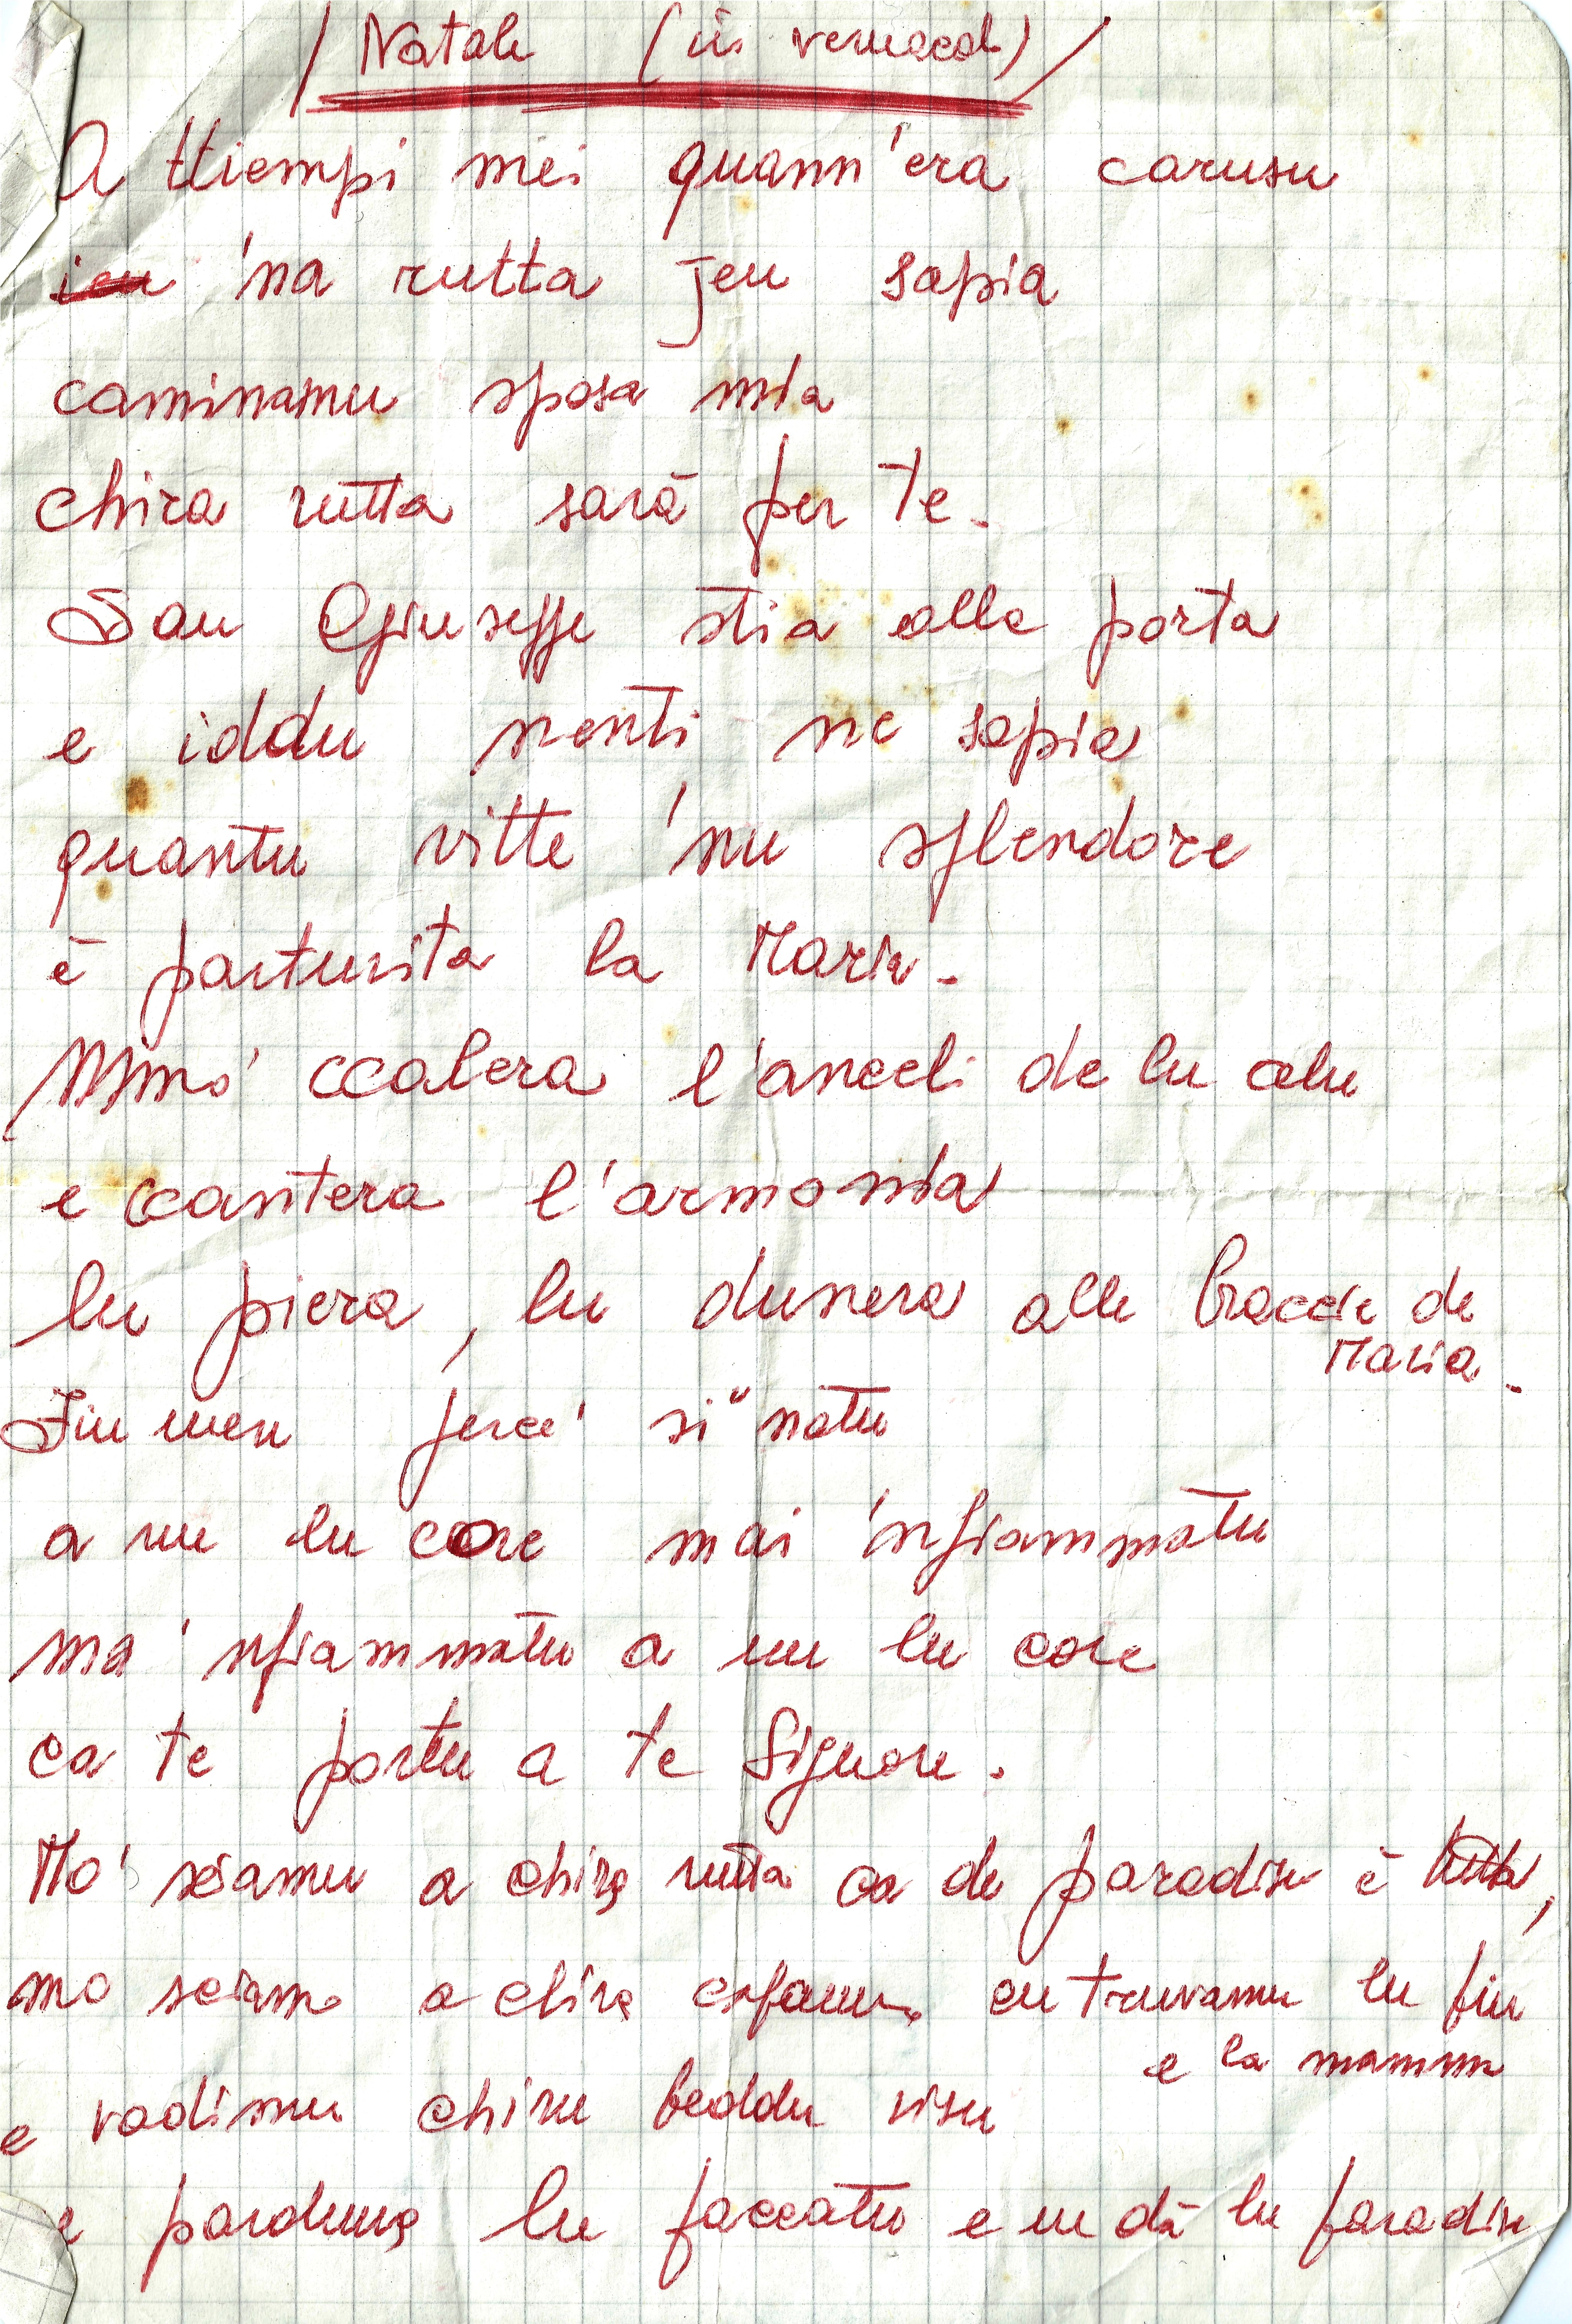 Poesie Di Natale In Dialetto Tarantino.Natale In Dialetto Tricasino Alberto Colangiulo